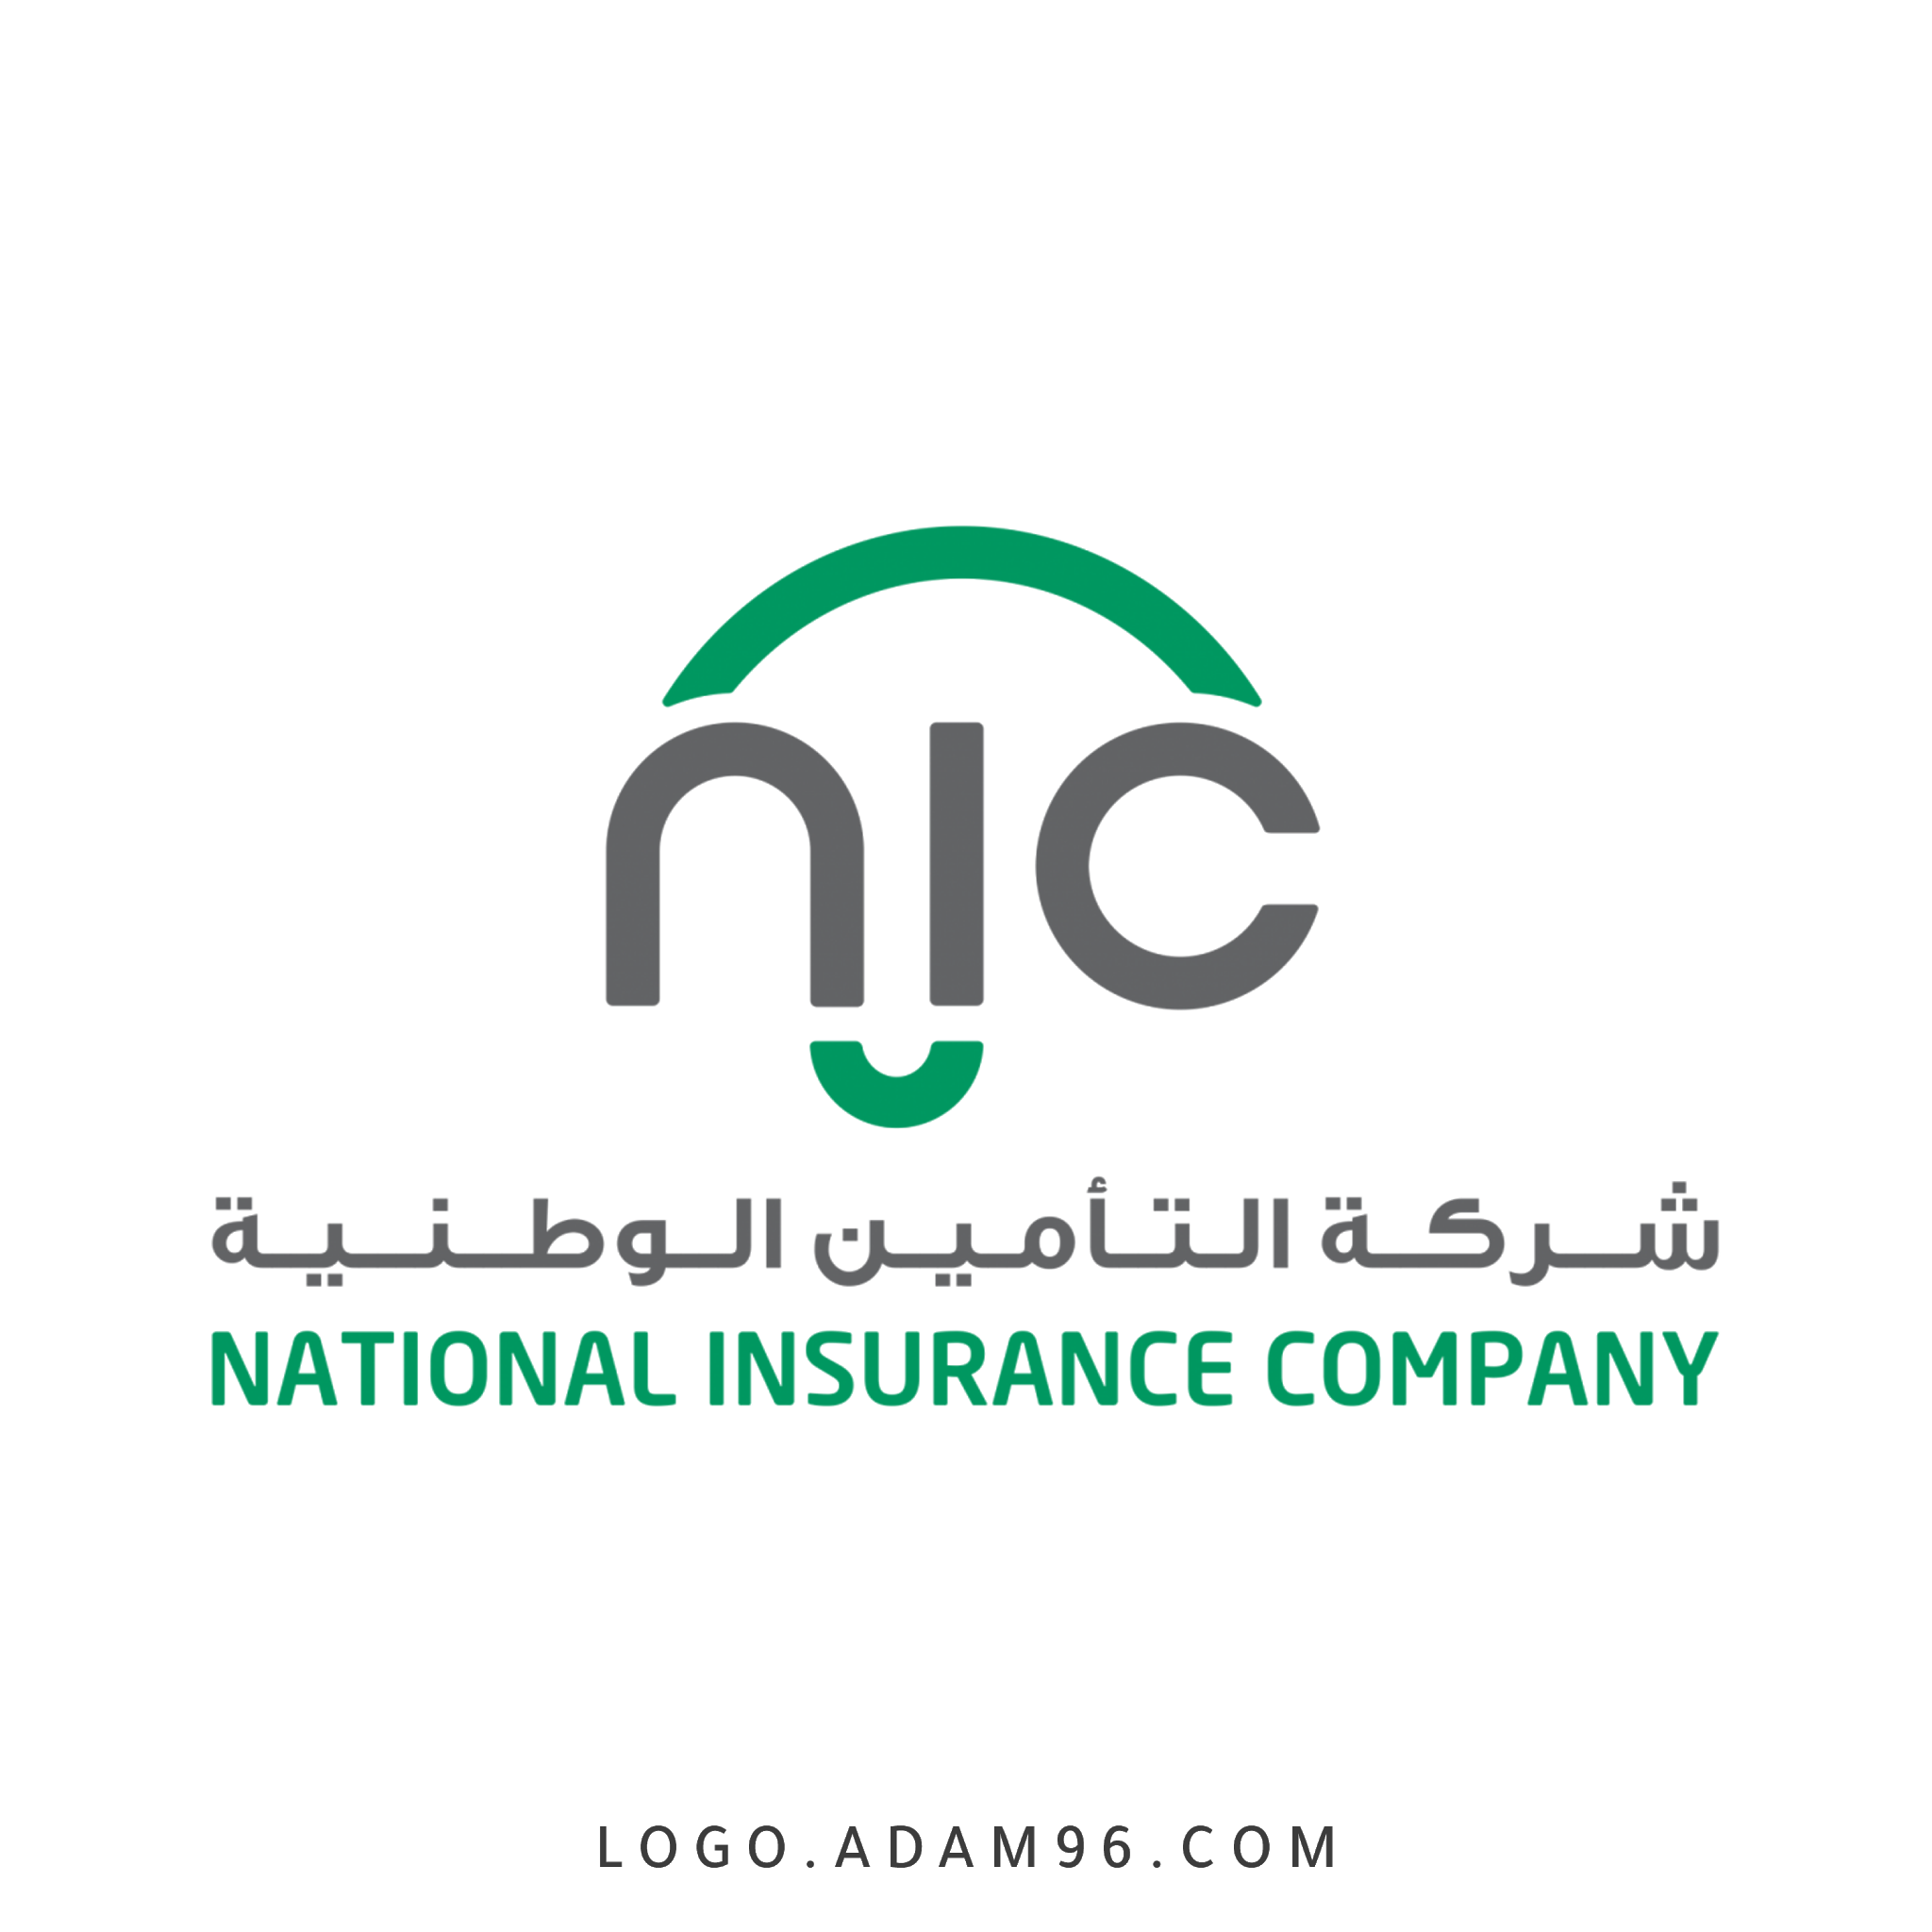 تحميل شعار شركة التأمين الوطنية - فلسطين لوجو رسمي PNG